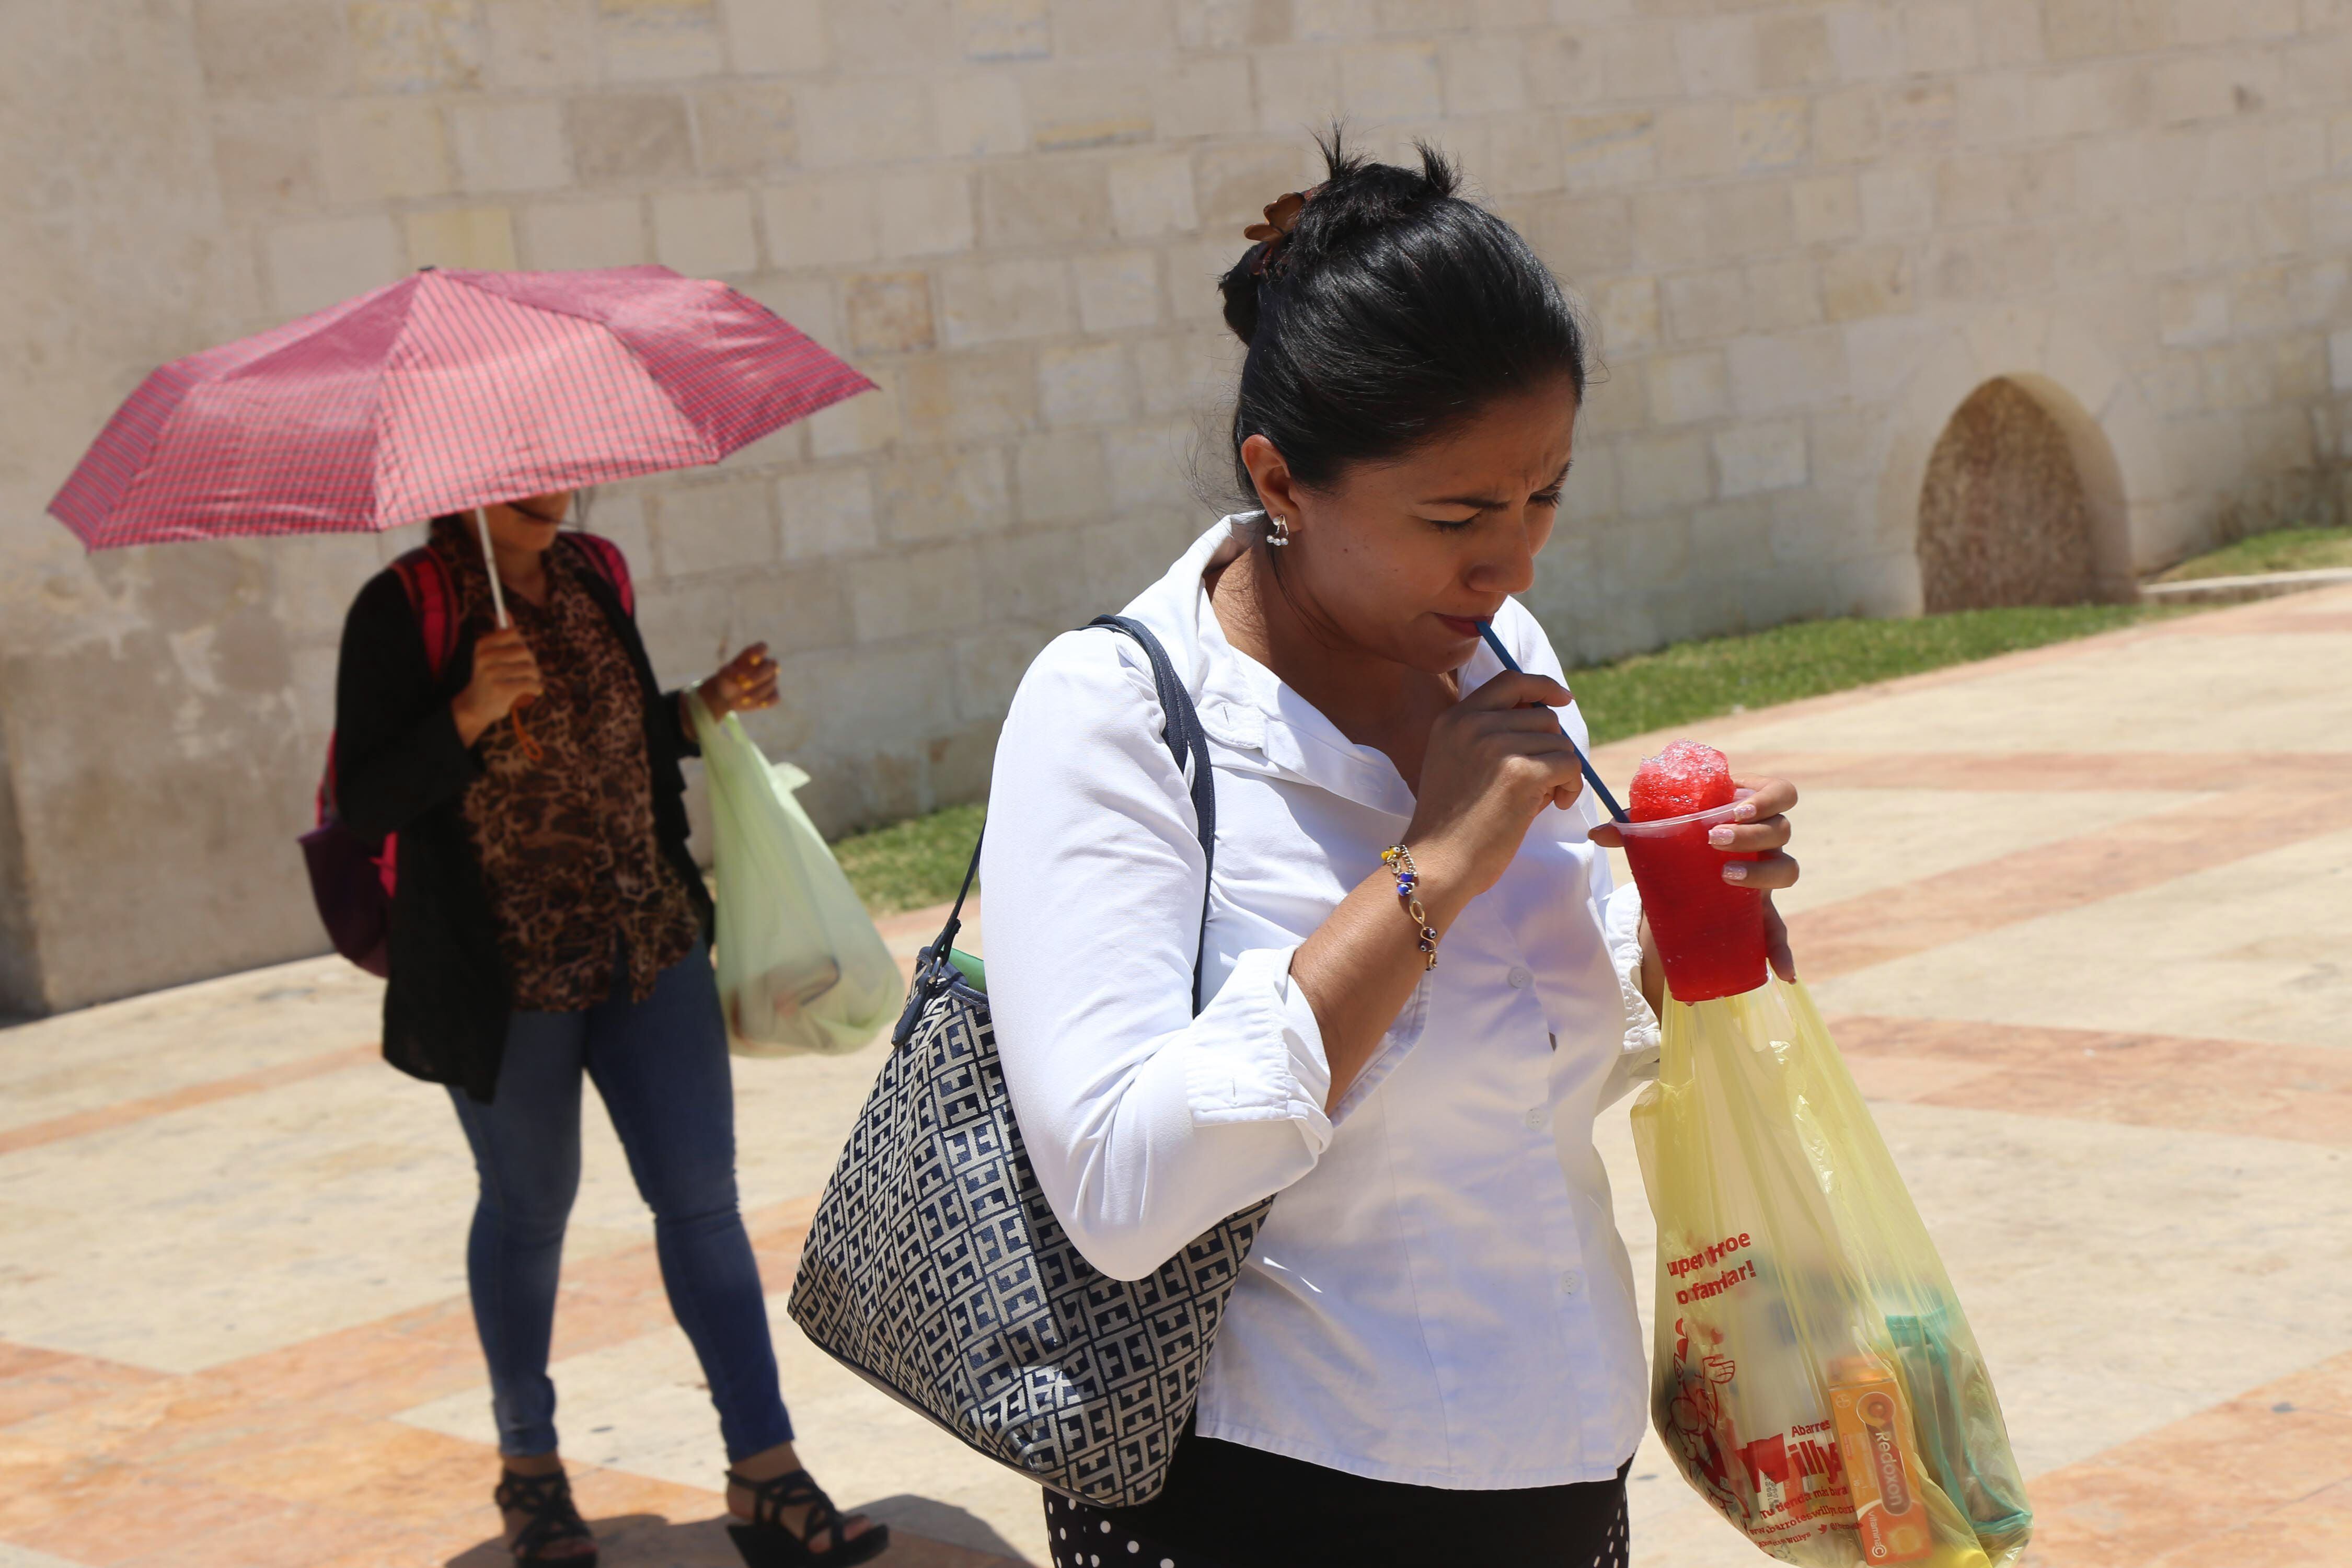 El calor extremo afectó significativamente a la salud de los mexicanos. Las altas temperaturas pueden ser peligrosas, especialmente para los grupos más vulnerables, como niños pequeños, adultos mayores y personas con condiciones de salud preexistentes. (MARTÍN ZETINA /CUARTOSCURO.COM)